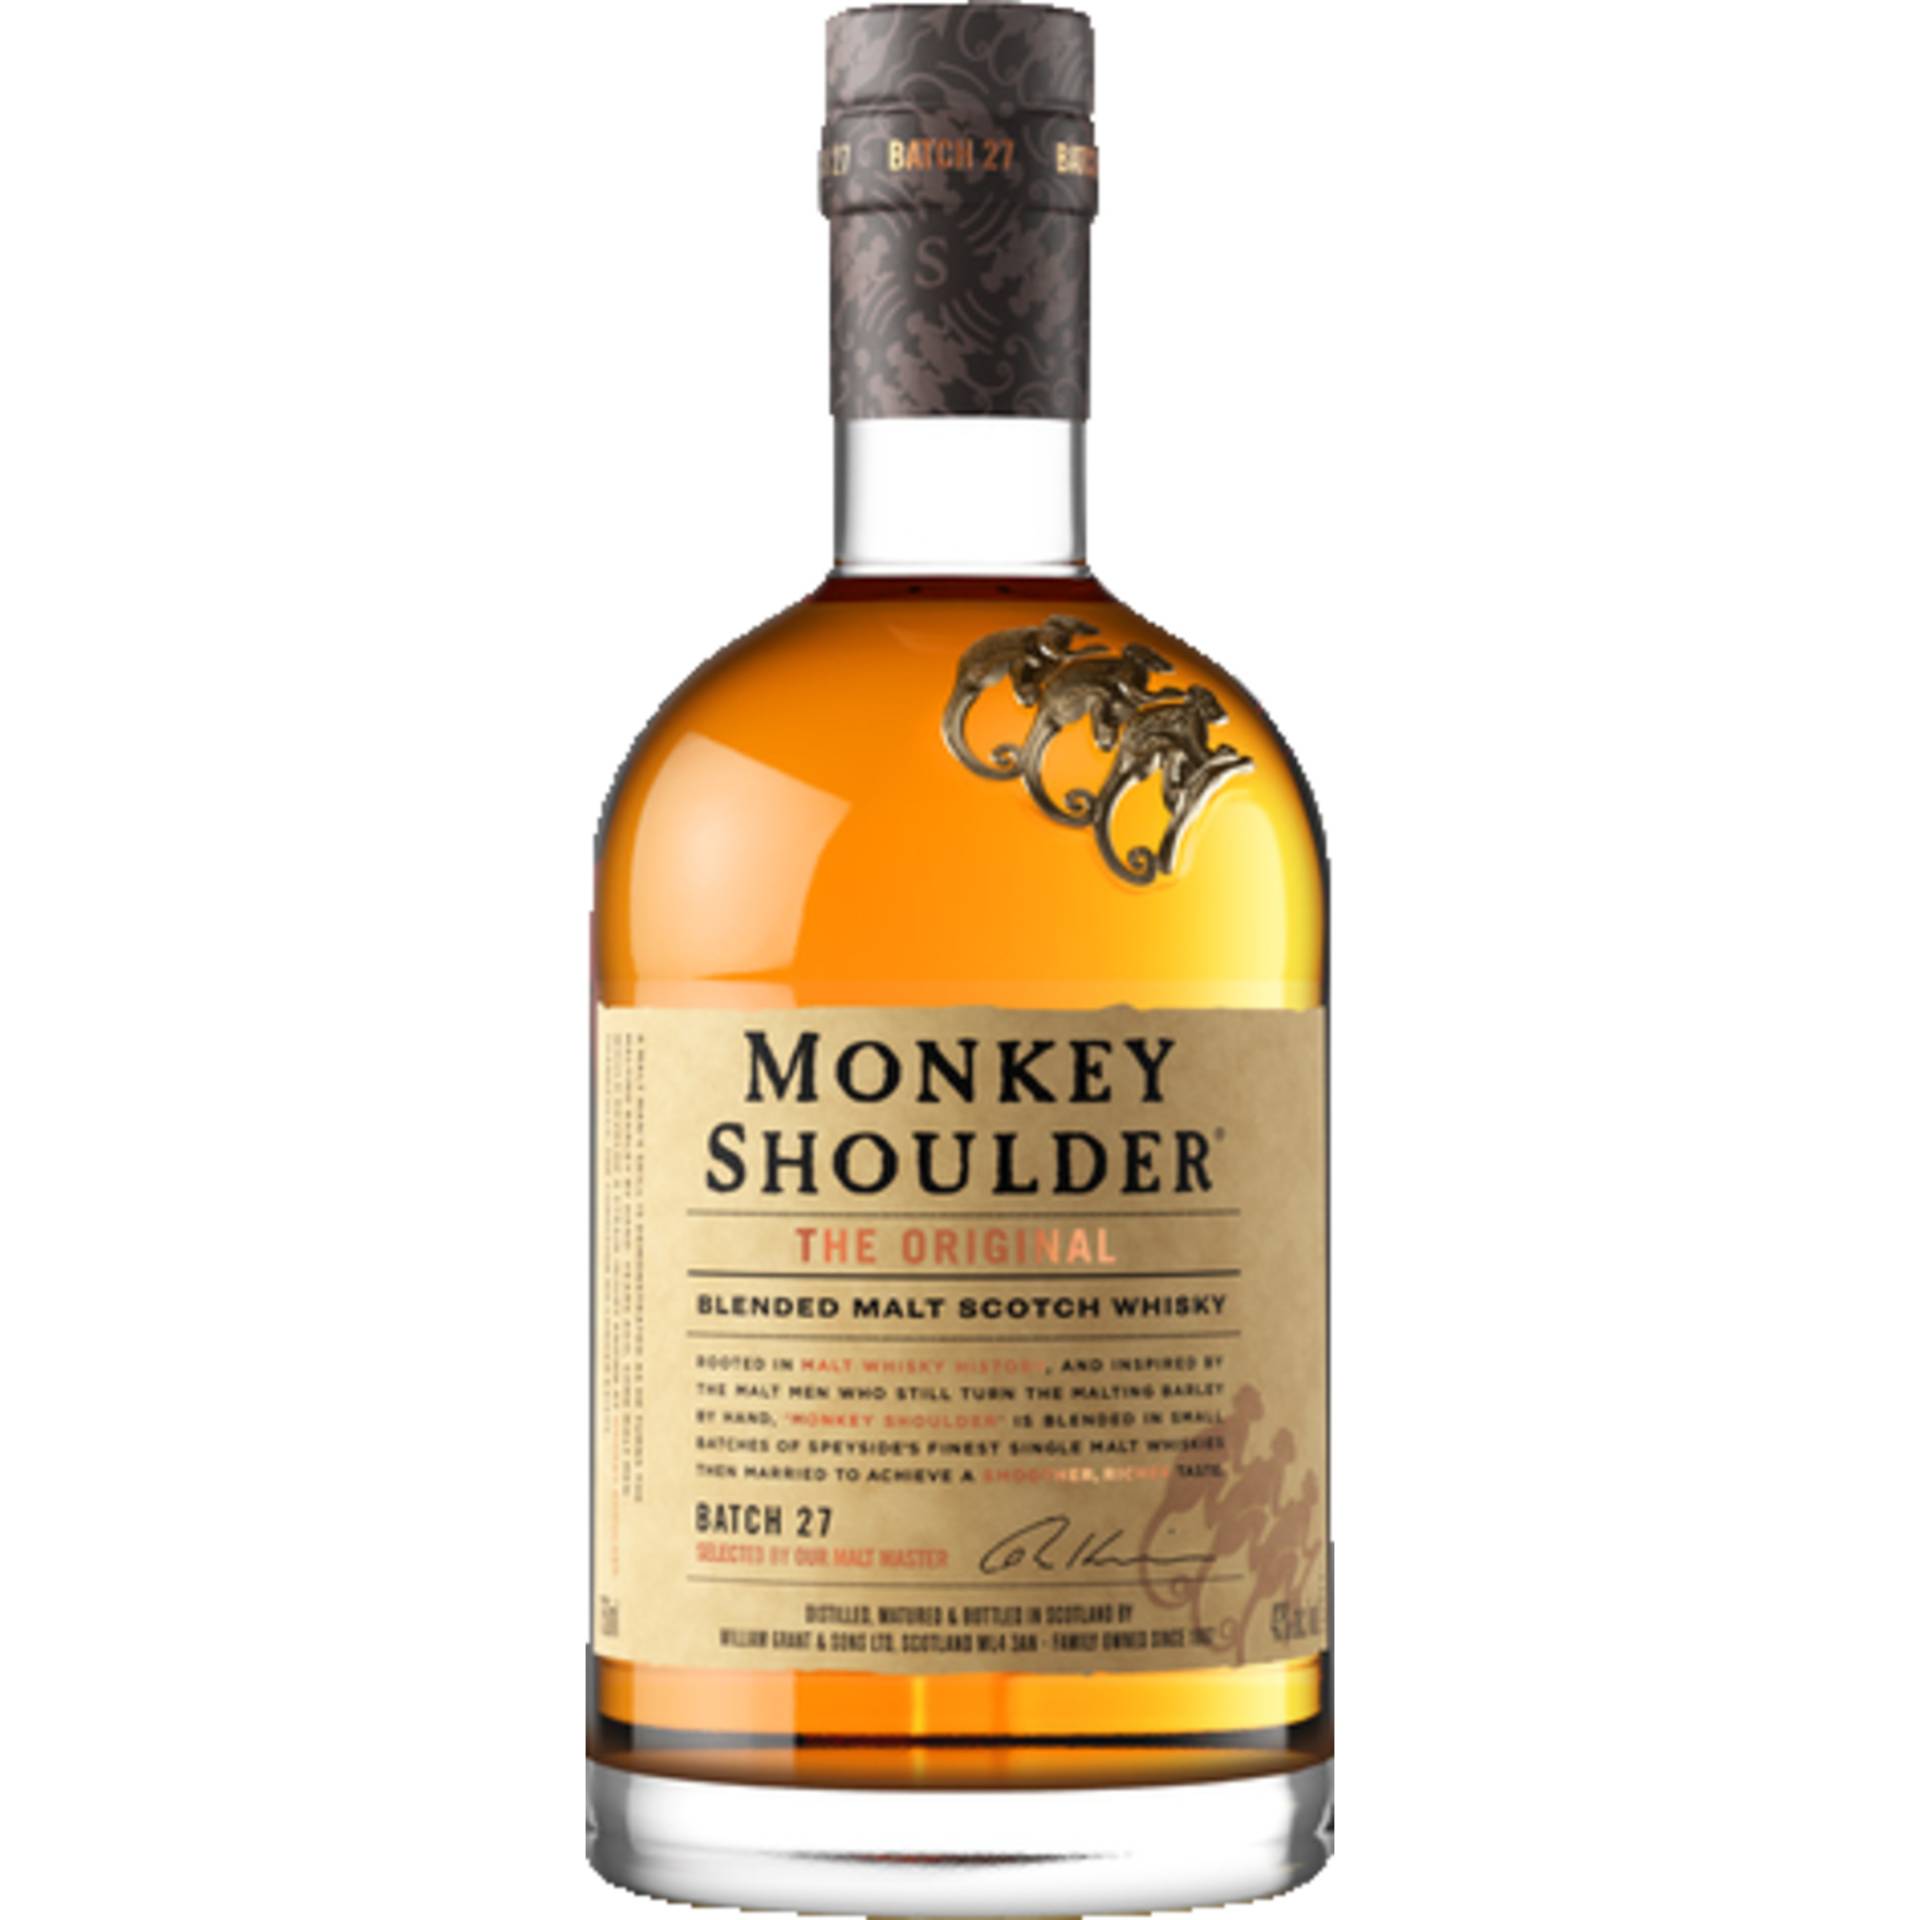 Monkey Shoulder Blended Scotch Whisky, 40 % vol. 0,7 L, Schottland, Spirituosen von William Grant & Sons Global Brands Ltd., Tullamore, Ireland